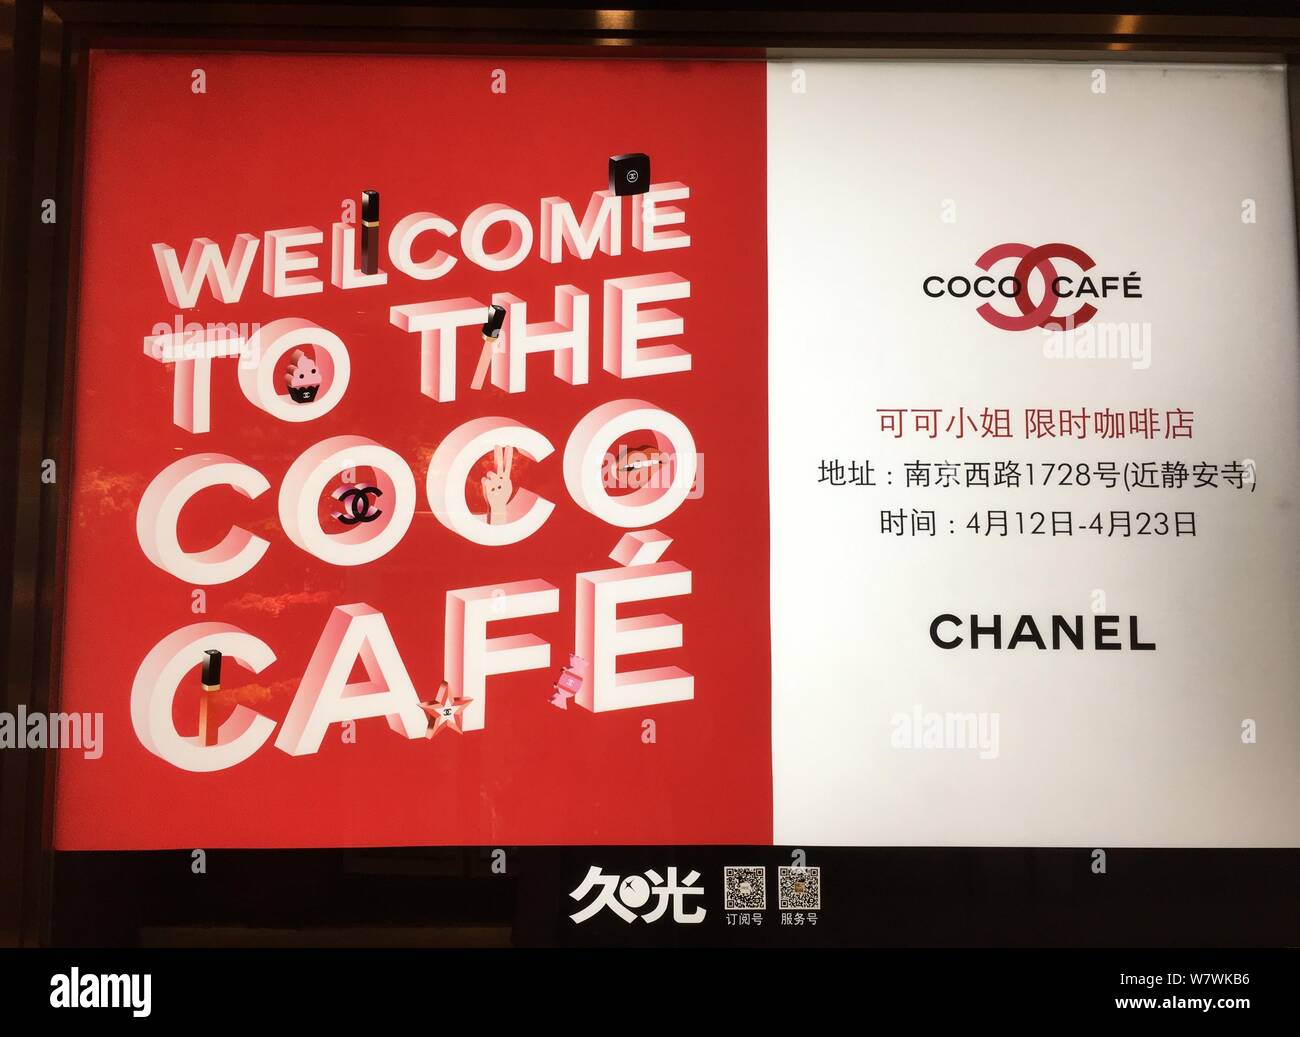 Vue d'une publicité pour le café Coco Chanel sur West Nanjing Road à Shanghai, Chine, le 12 avril 2017. Chanel est l'hôte d'un café à durée limitée à l'al. Banque D'Images